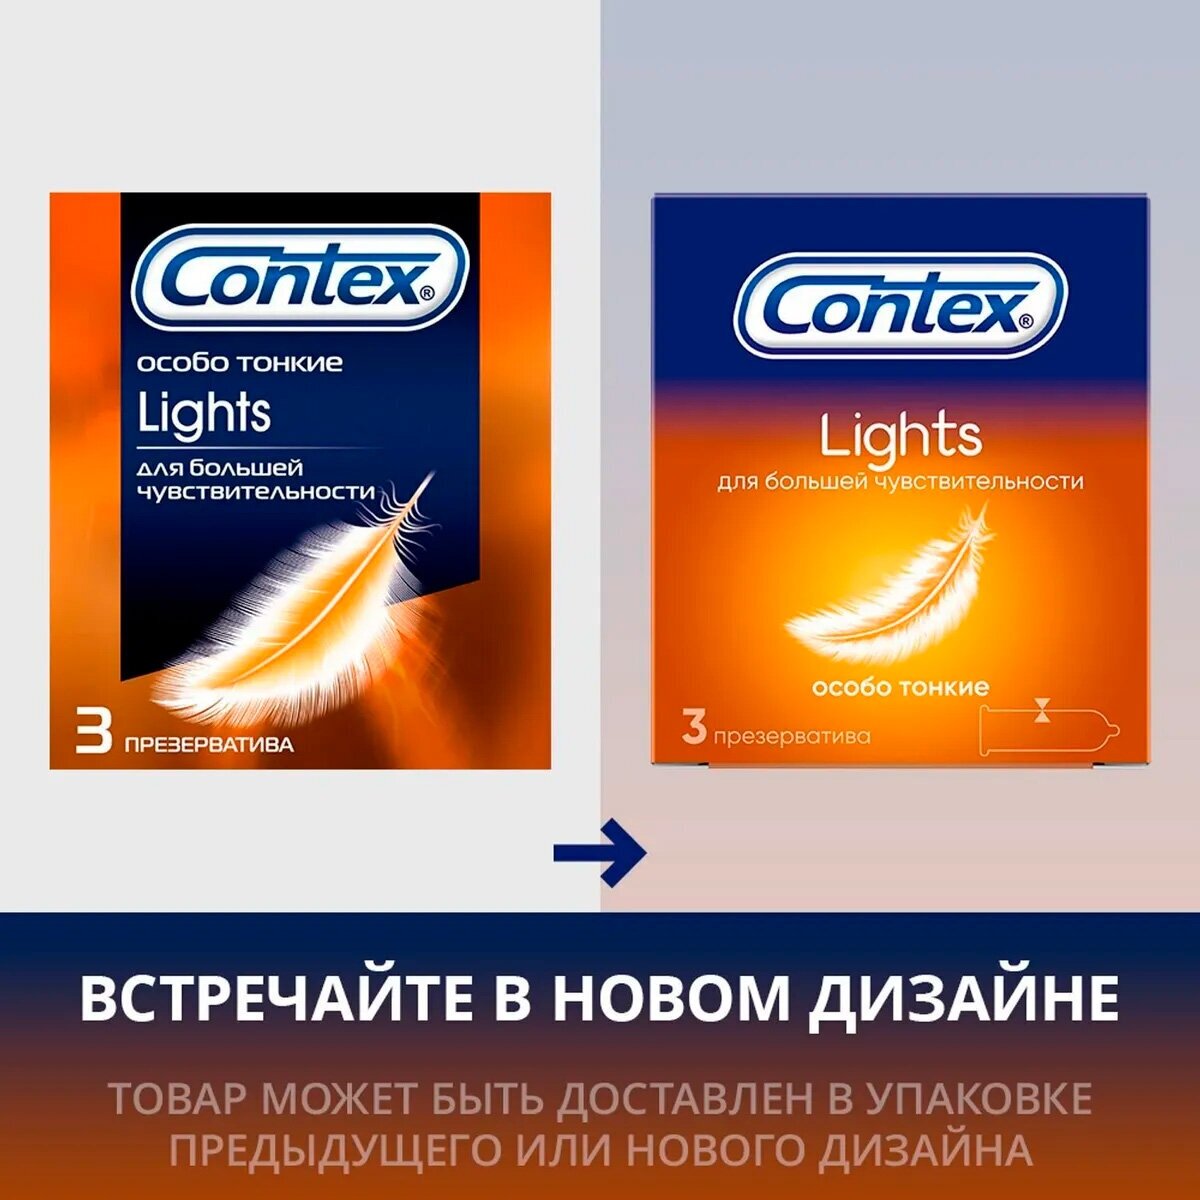 Презервативы Contex (Контекс) Light особо тонкие 18 шт. Рекитт Бенкизер Хелскэар (ЮК) Лтд - фото №8